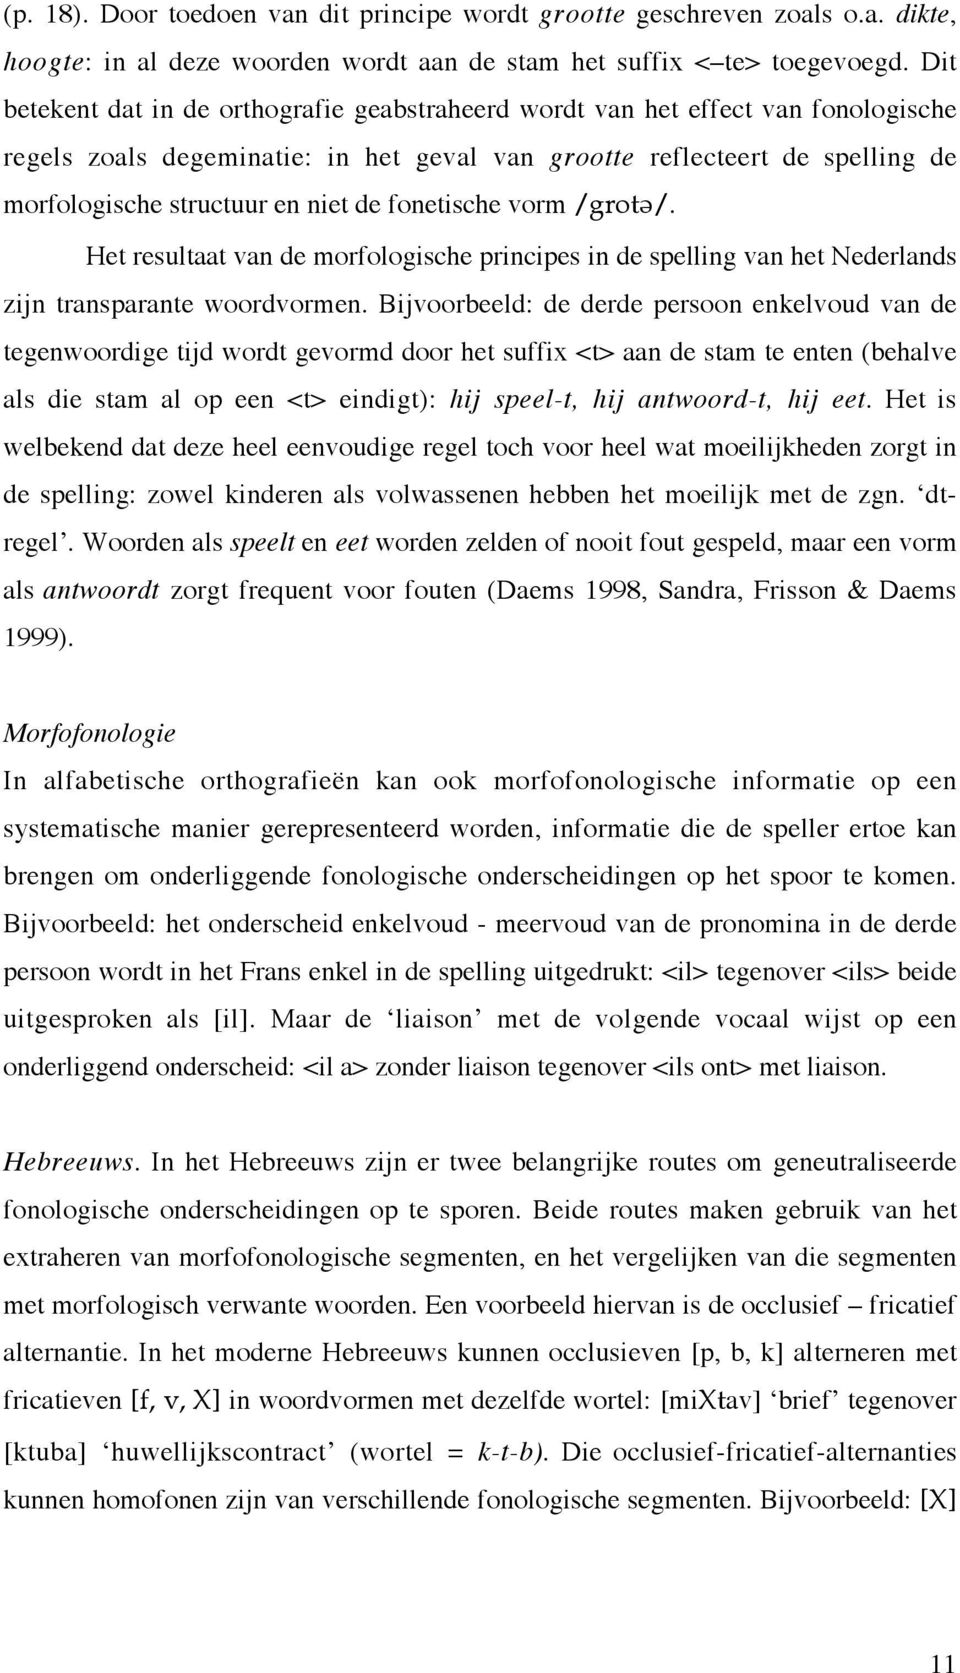 fonetische vorm /grot\/. Het resultaat van de morfologische principes in de spelling van het Nederlands zijn transparante woordvormen.